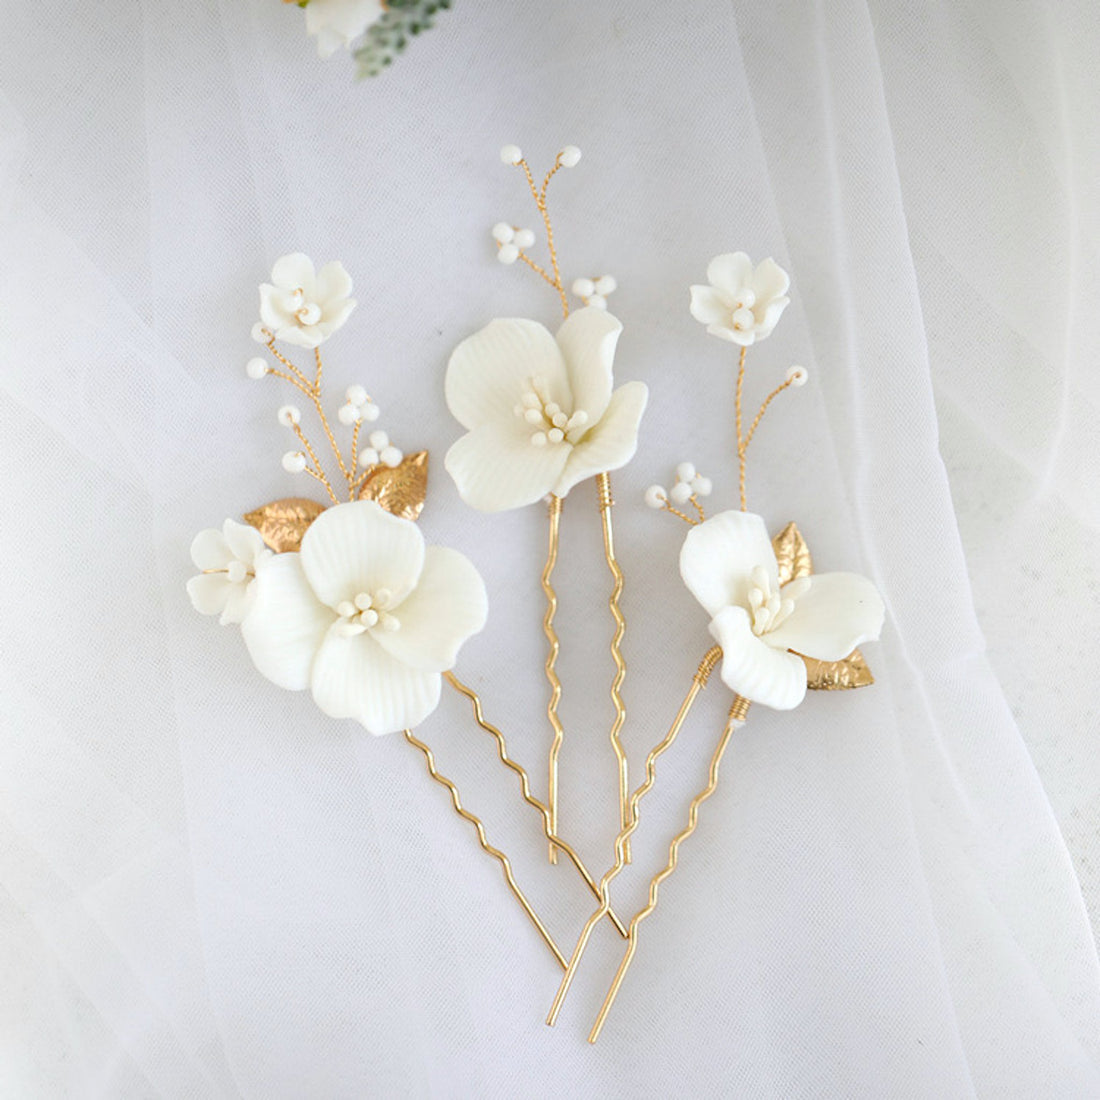 Handgefertigte Braut-Haarnadeln aus Keramik mit weißen Blumen – ein 3er-Set – Gold und Silber